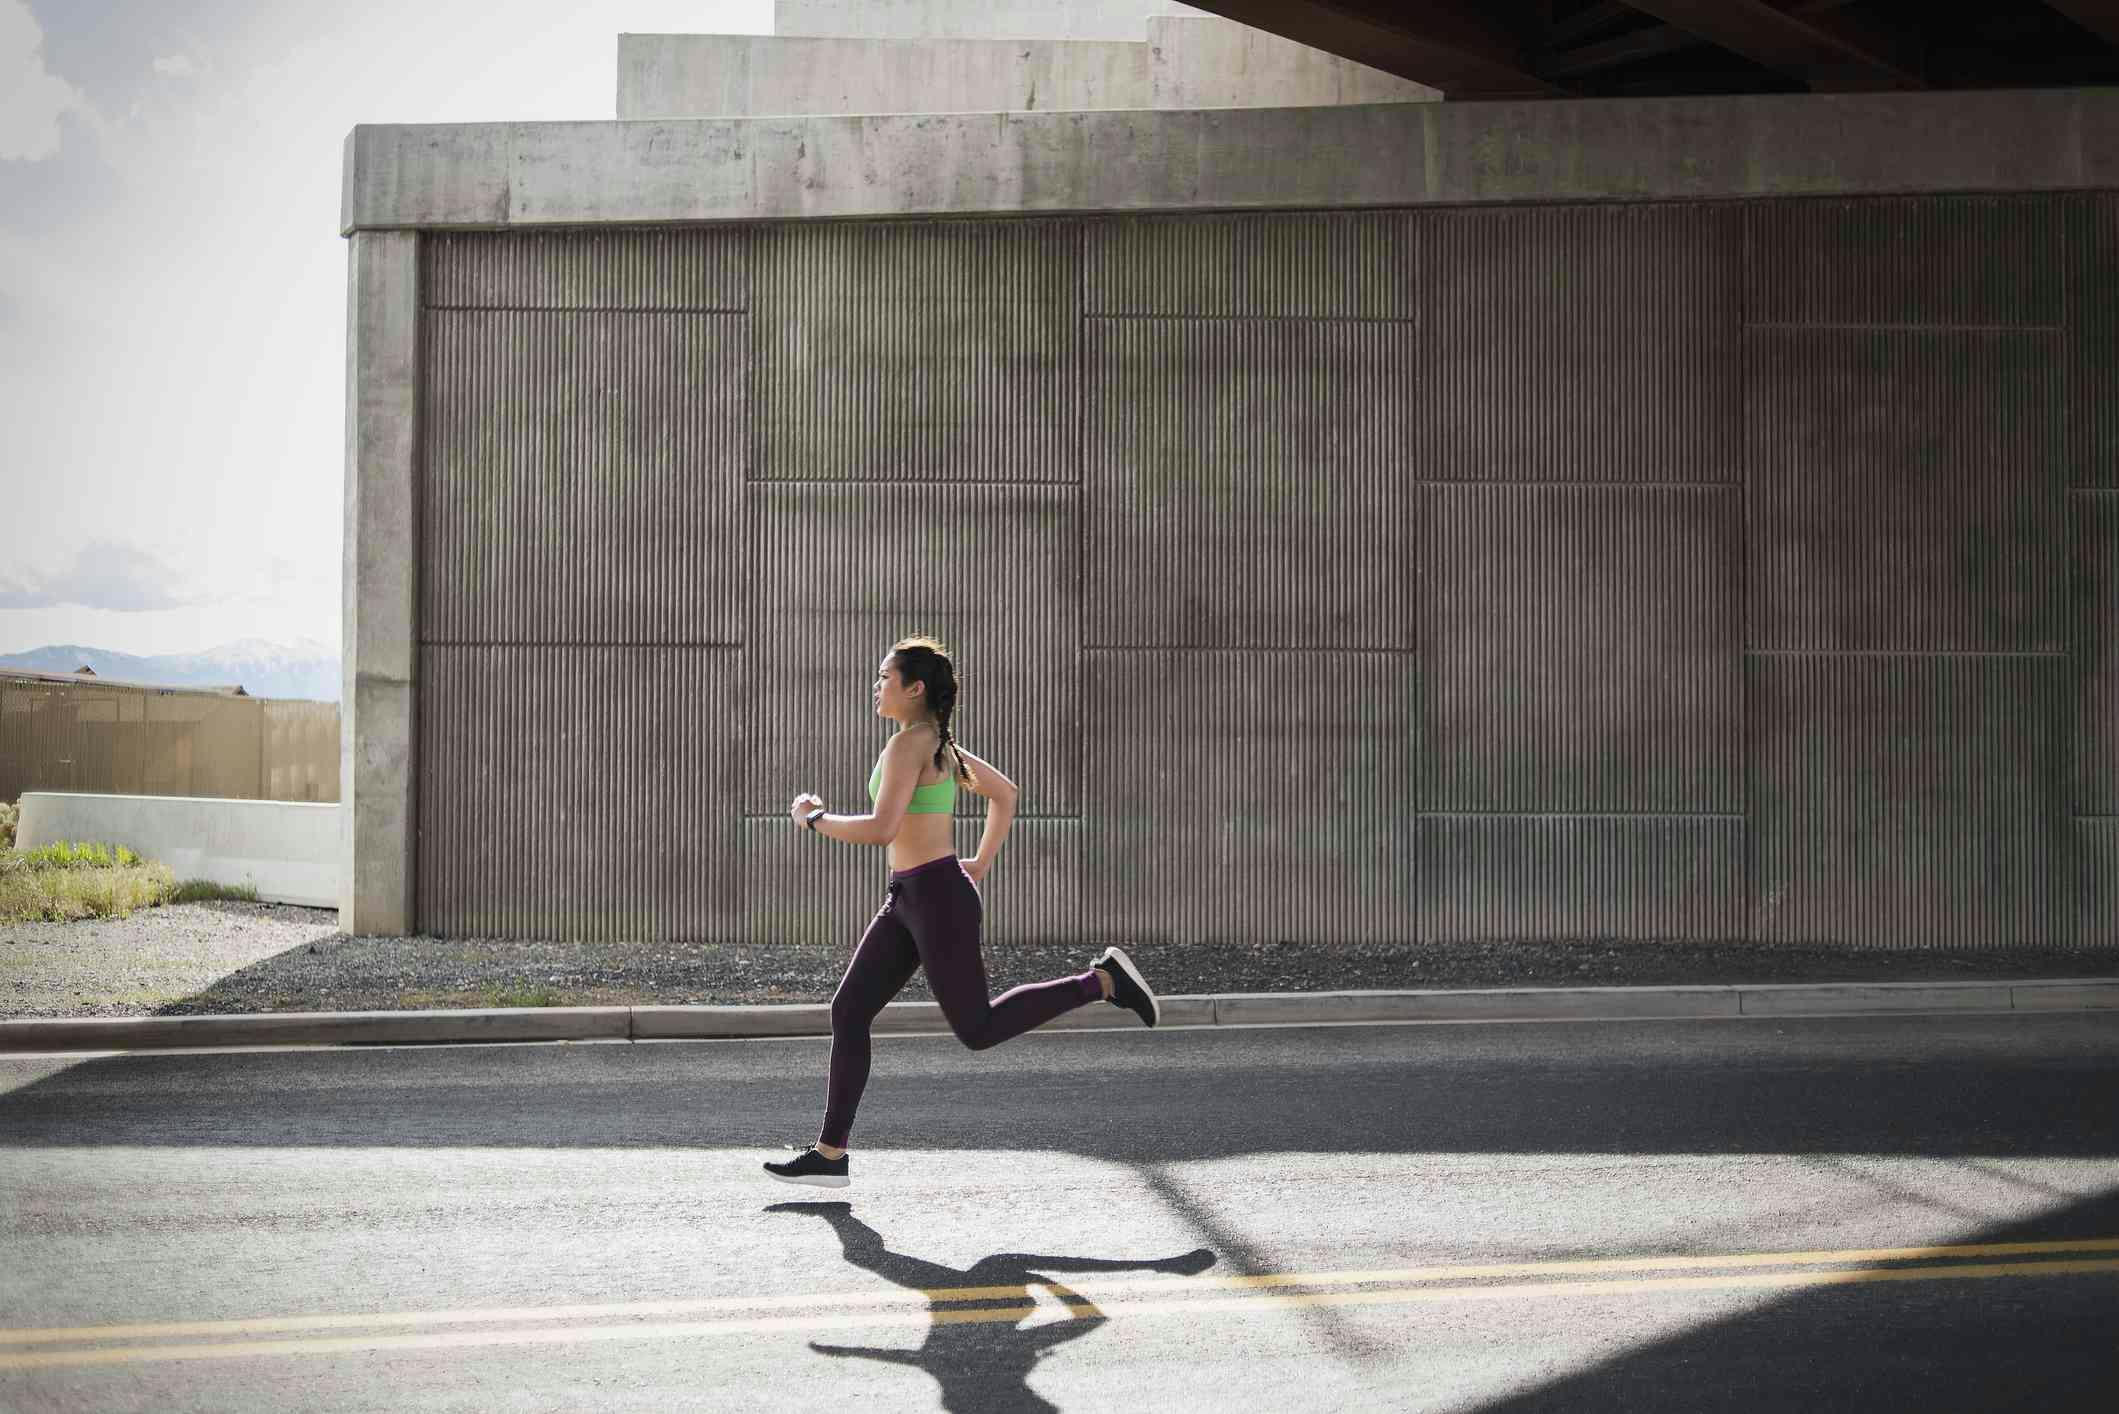 «Οι γυναίκες που τρέχουν έχουν πιο έντονους οργασμούς» σύμφωνα με πρόσφατη μελέτη